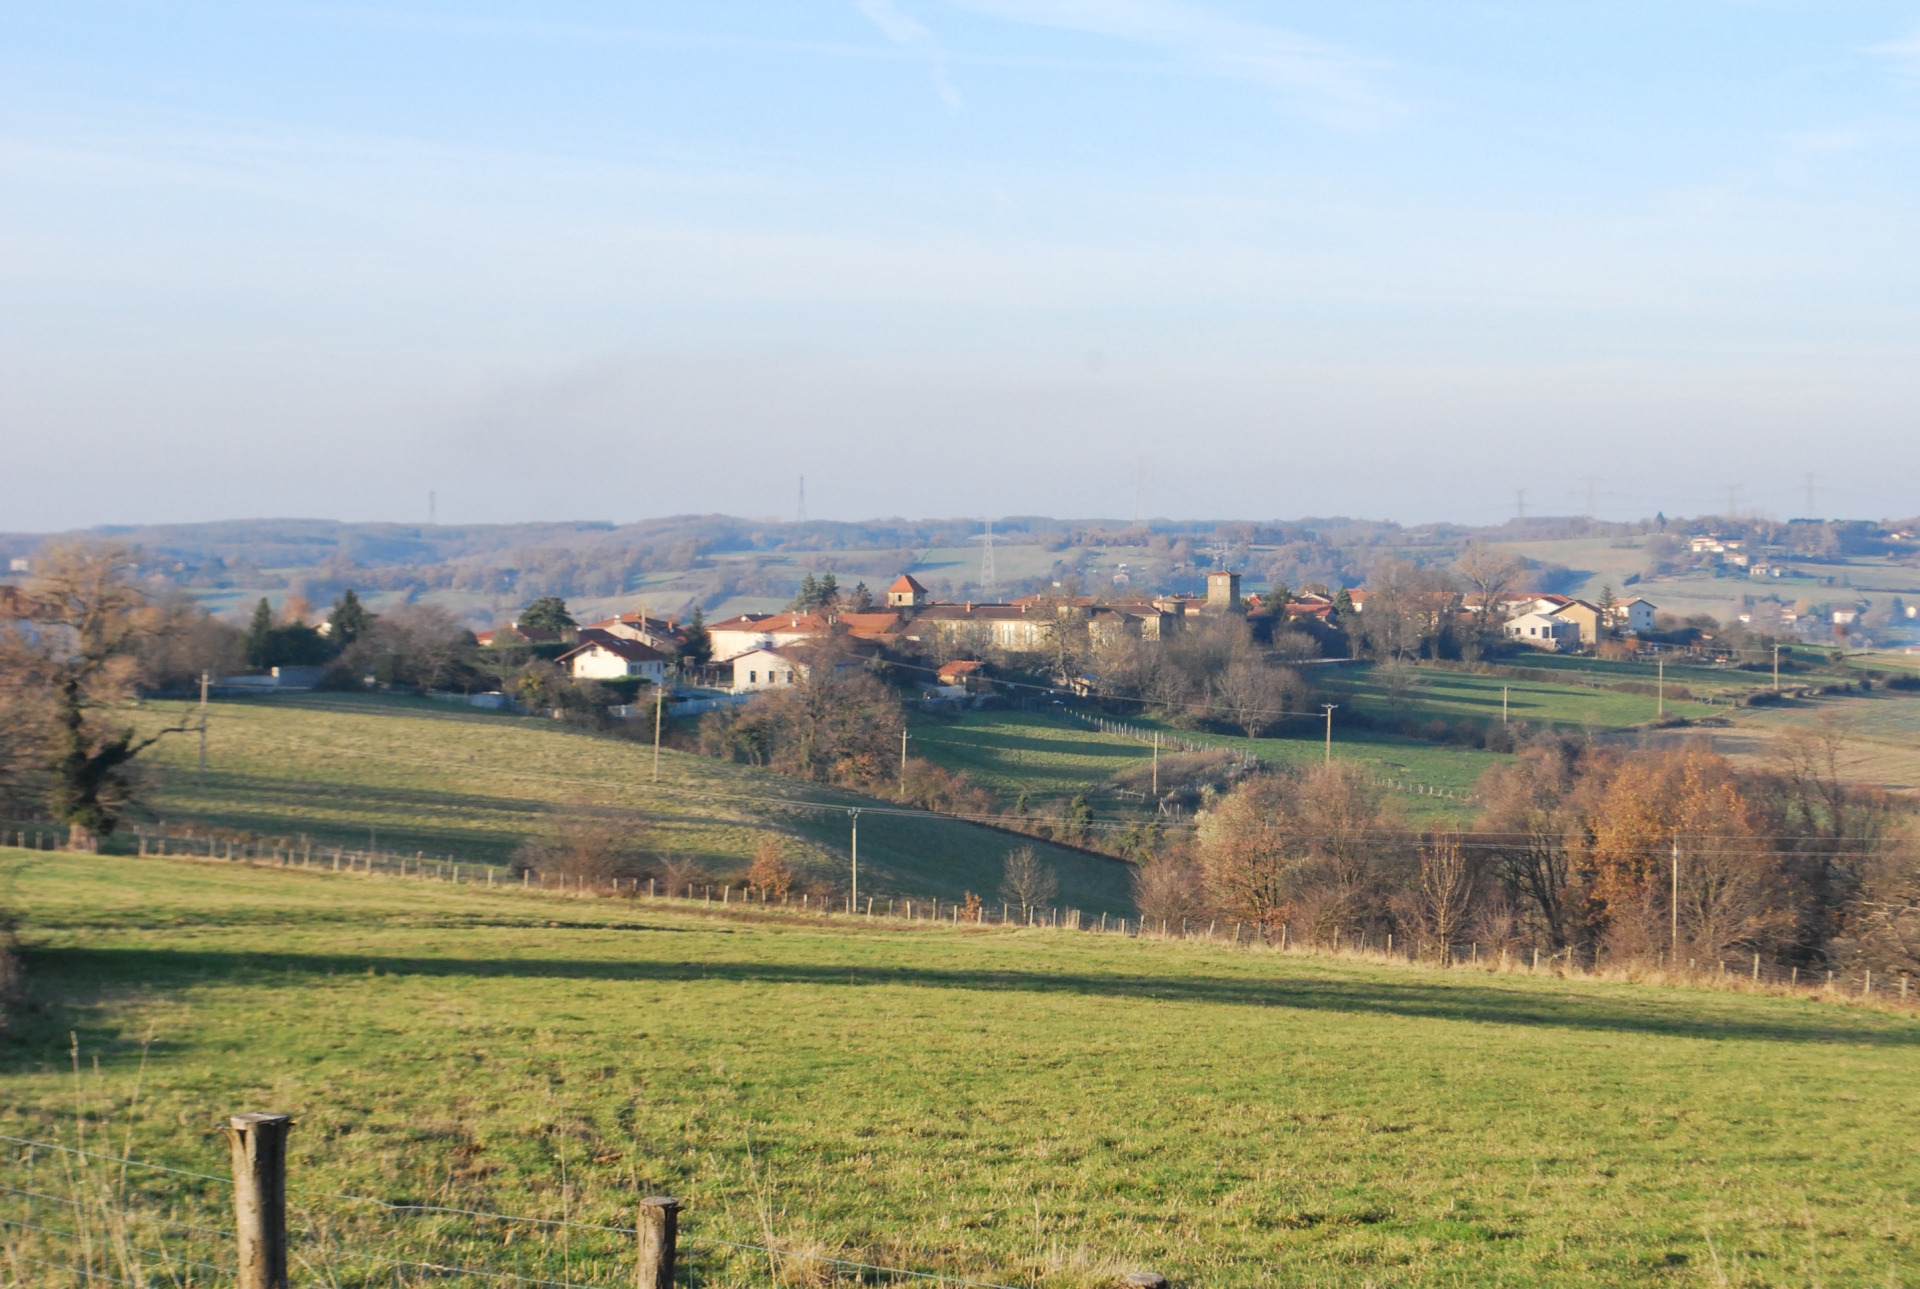 Les locations agricoles en Isère